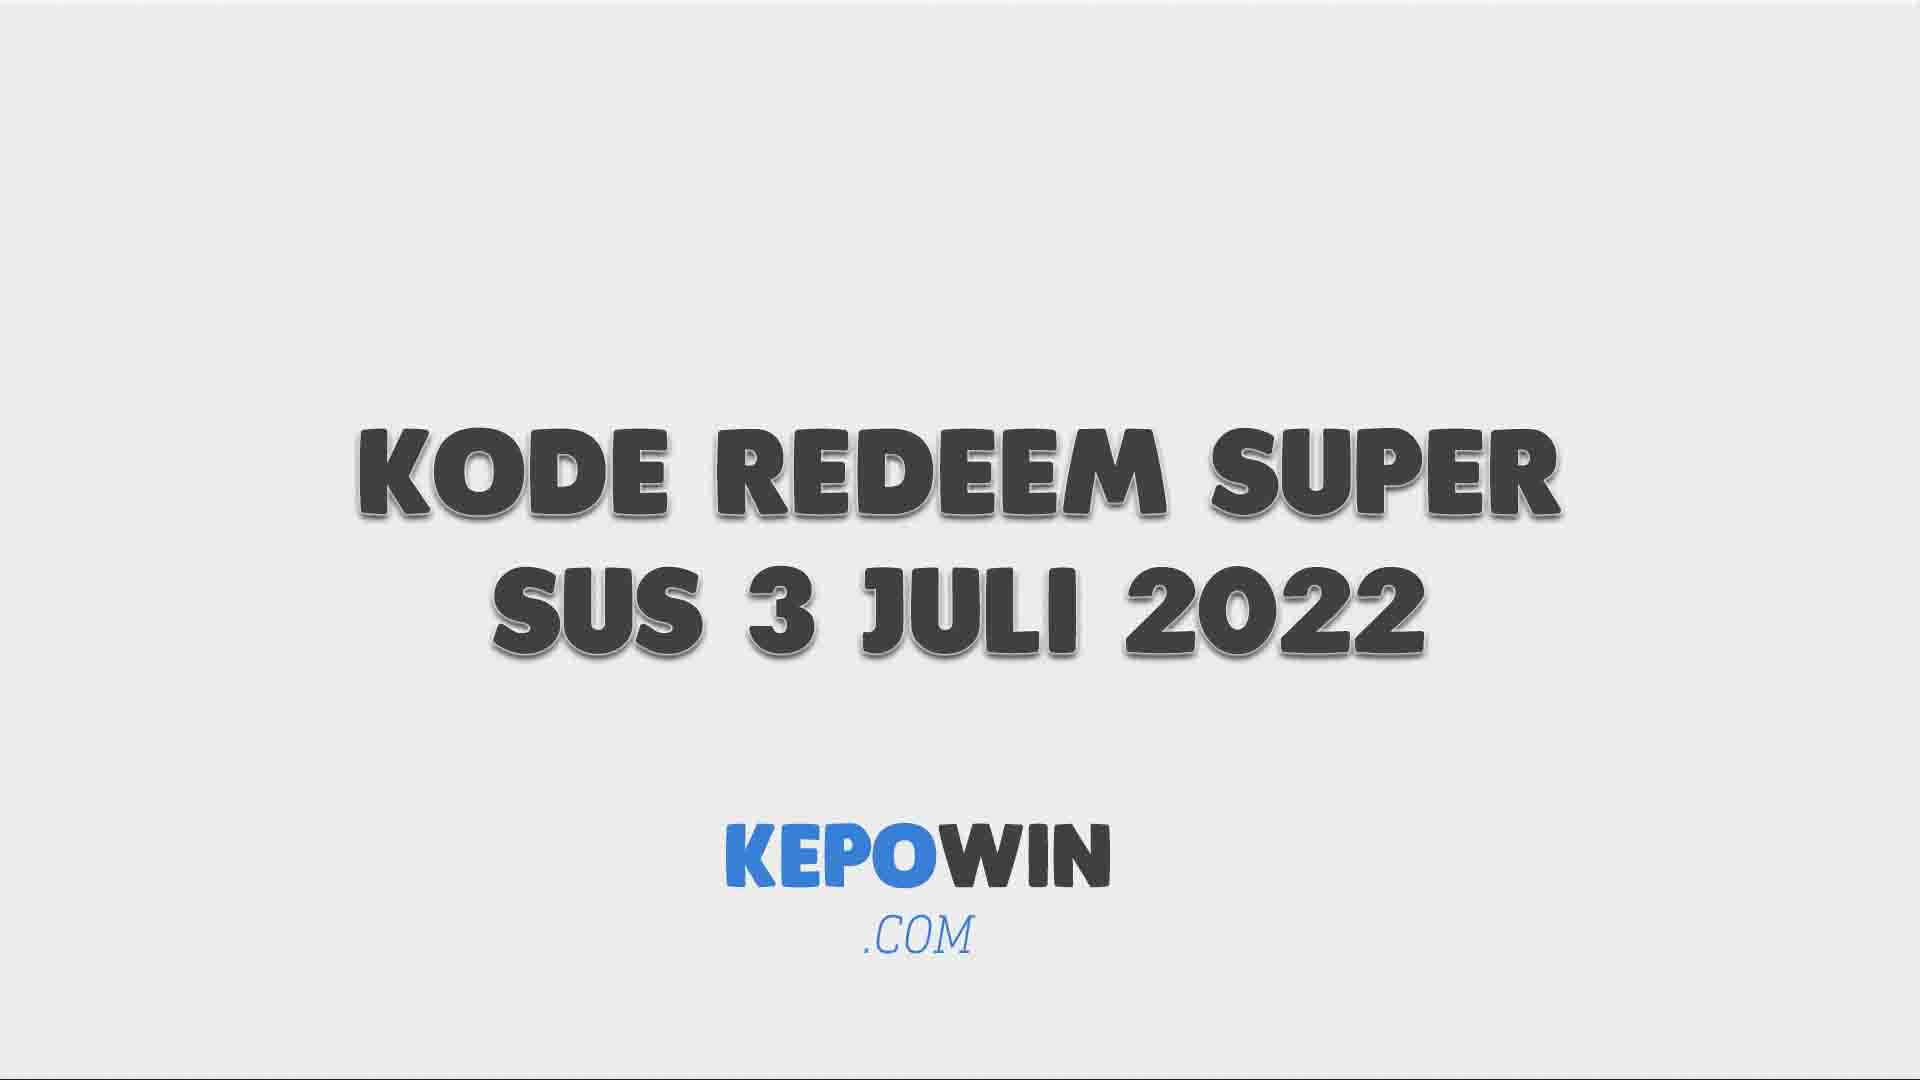 Kode Redeem Super Sus 3 Juli 2022 Hari Ini Terbaru